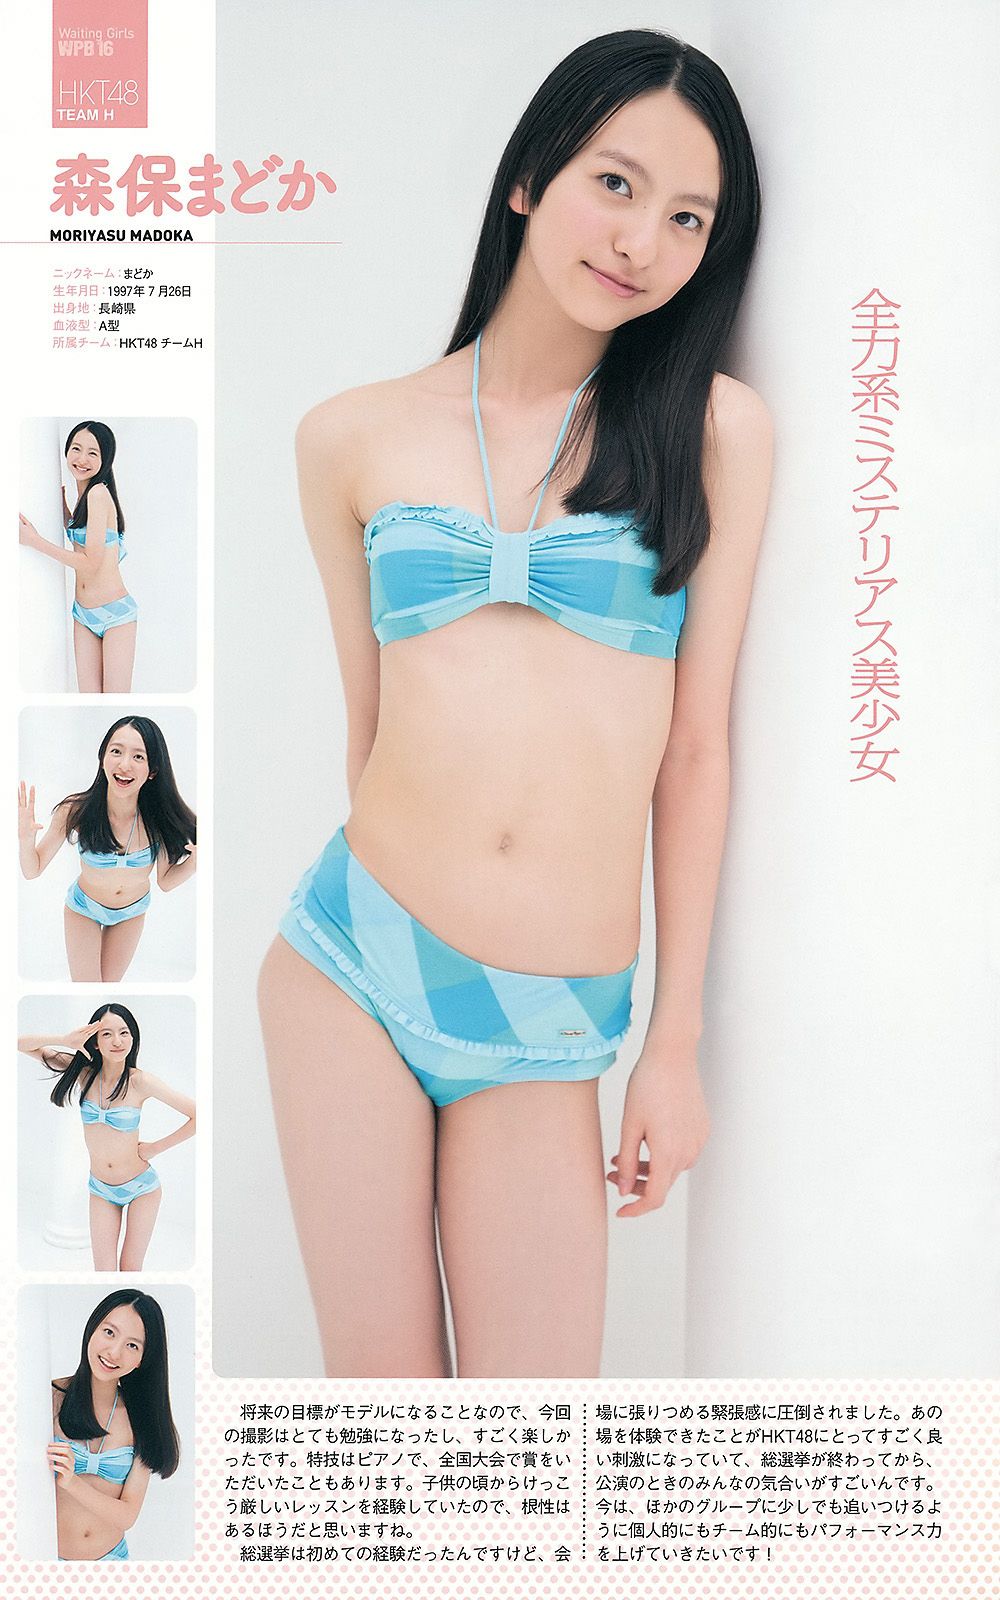 AKB48 Atsuko Maeda Riria Riria Sayaka Okada [Wöchentlicher Playboy] 2012 Nr. 36 Foto Seite 11 No.2bf670